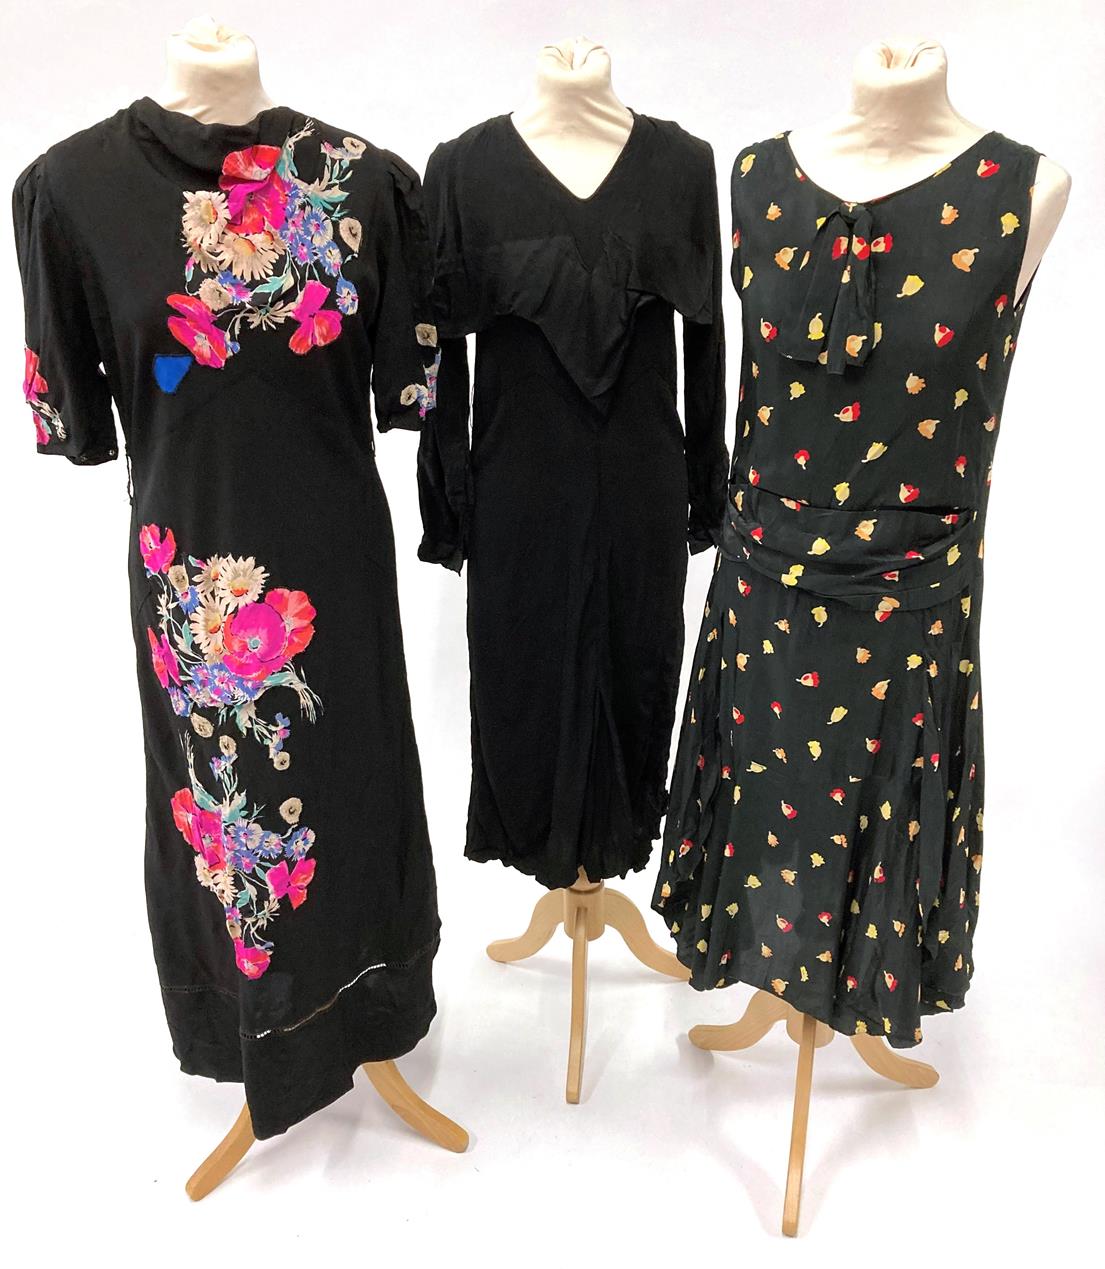 Lot 2035 - Circa 1920/30s Evening Dresses, comprising a black silk sleeveless dress with drop waist,...